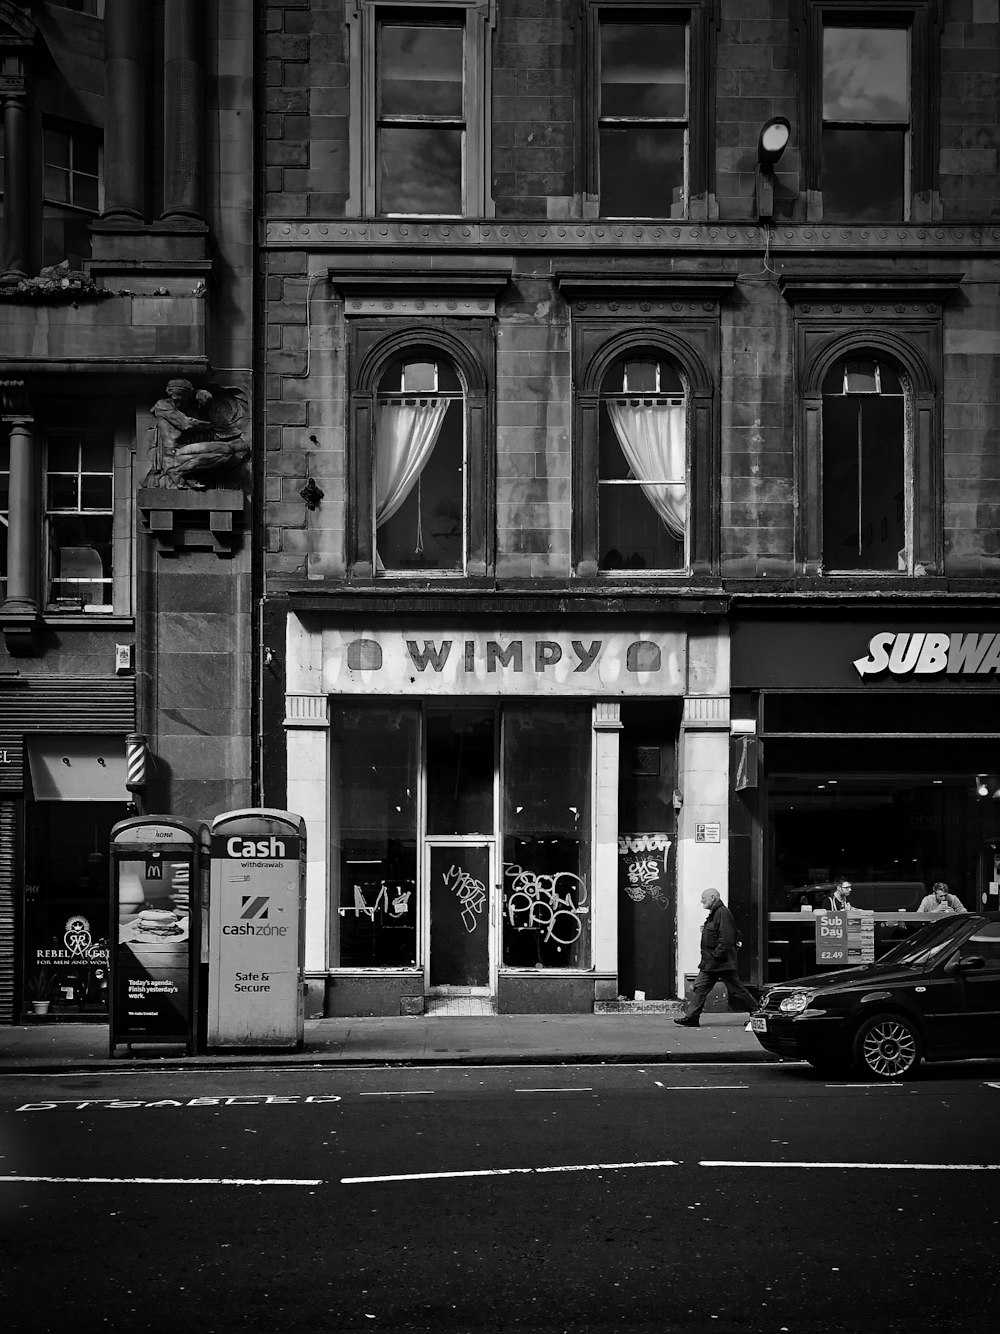 Foto en escala de grises de una persona que se despierta en la calle al lado de la boutique Wimpy